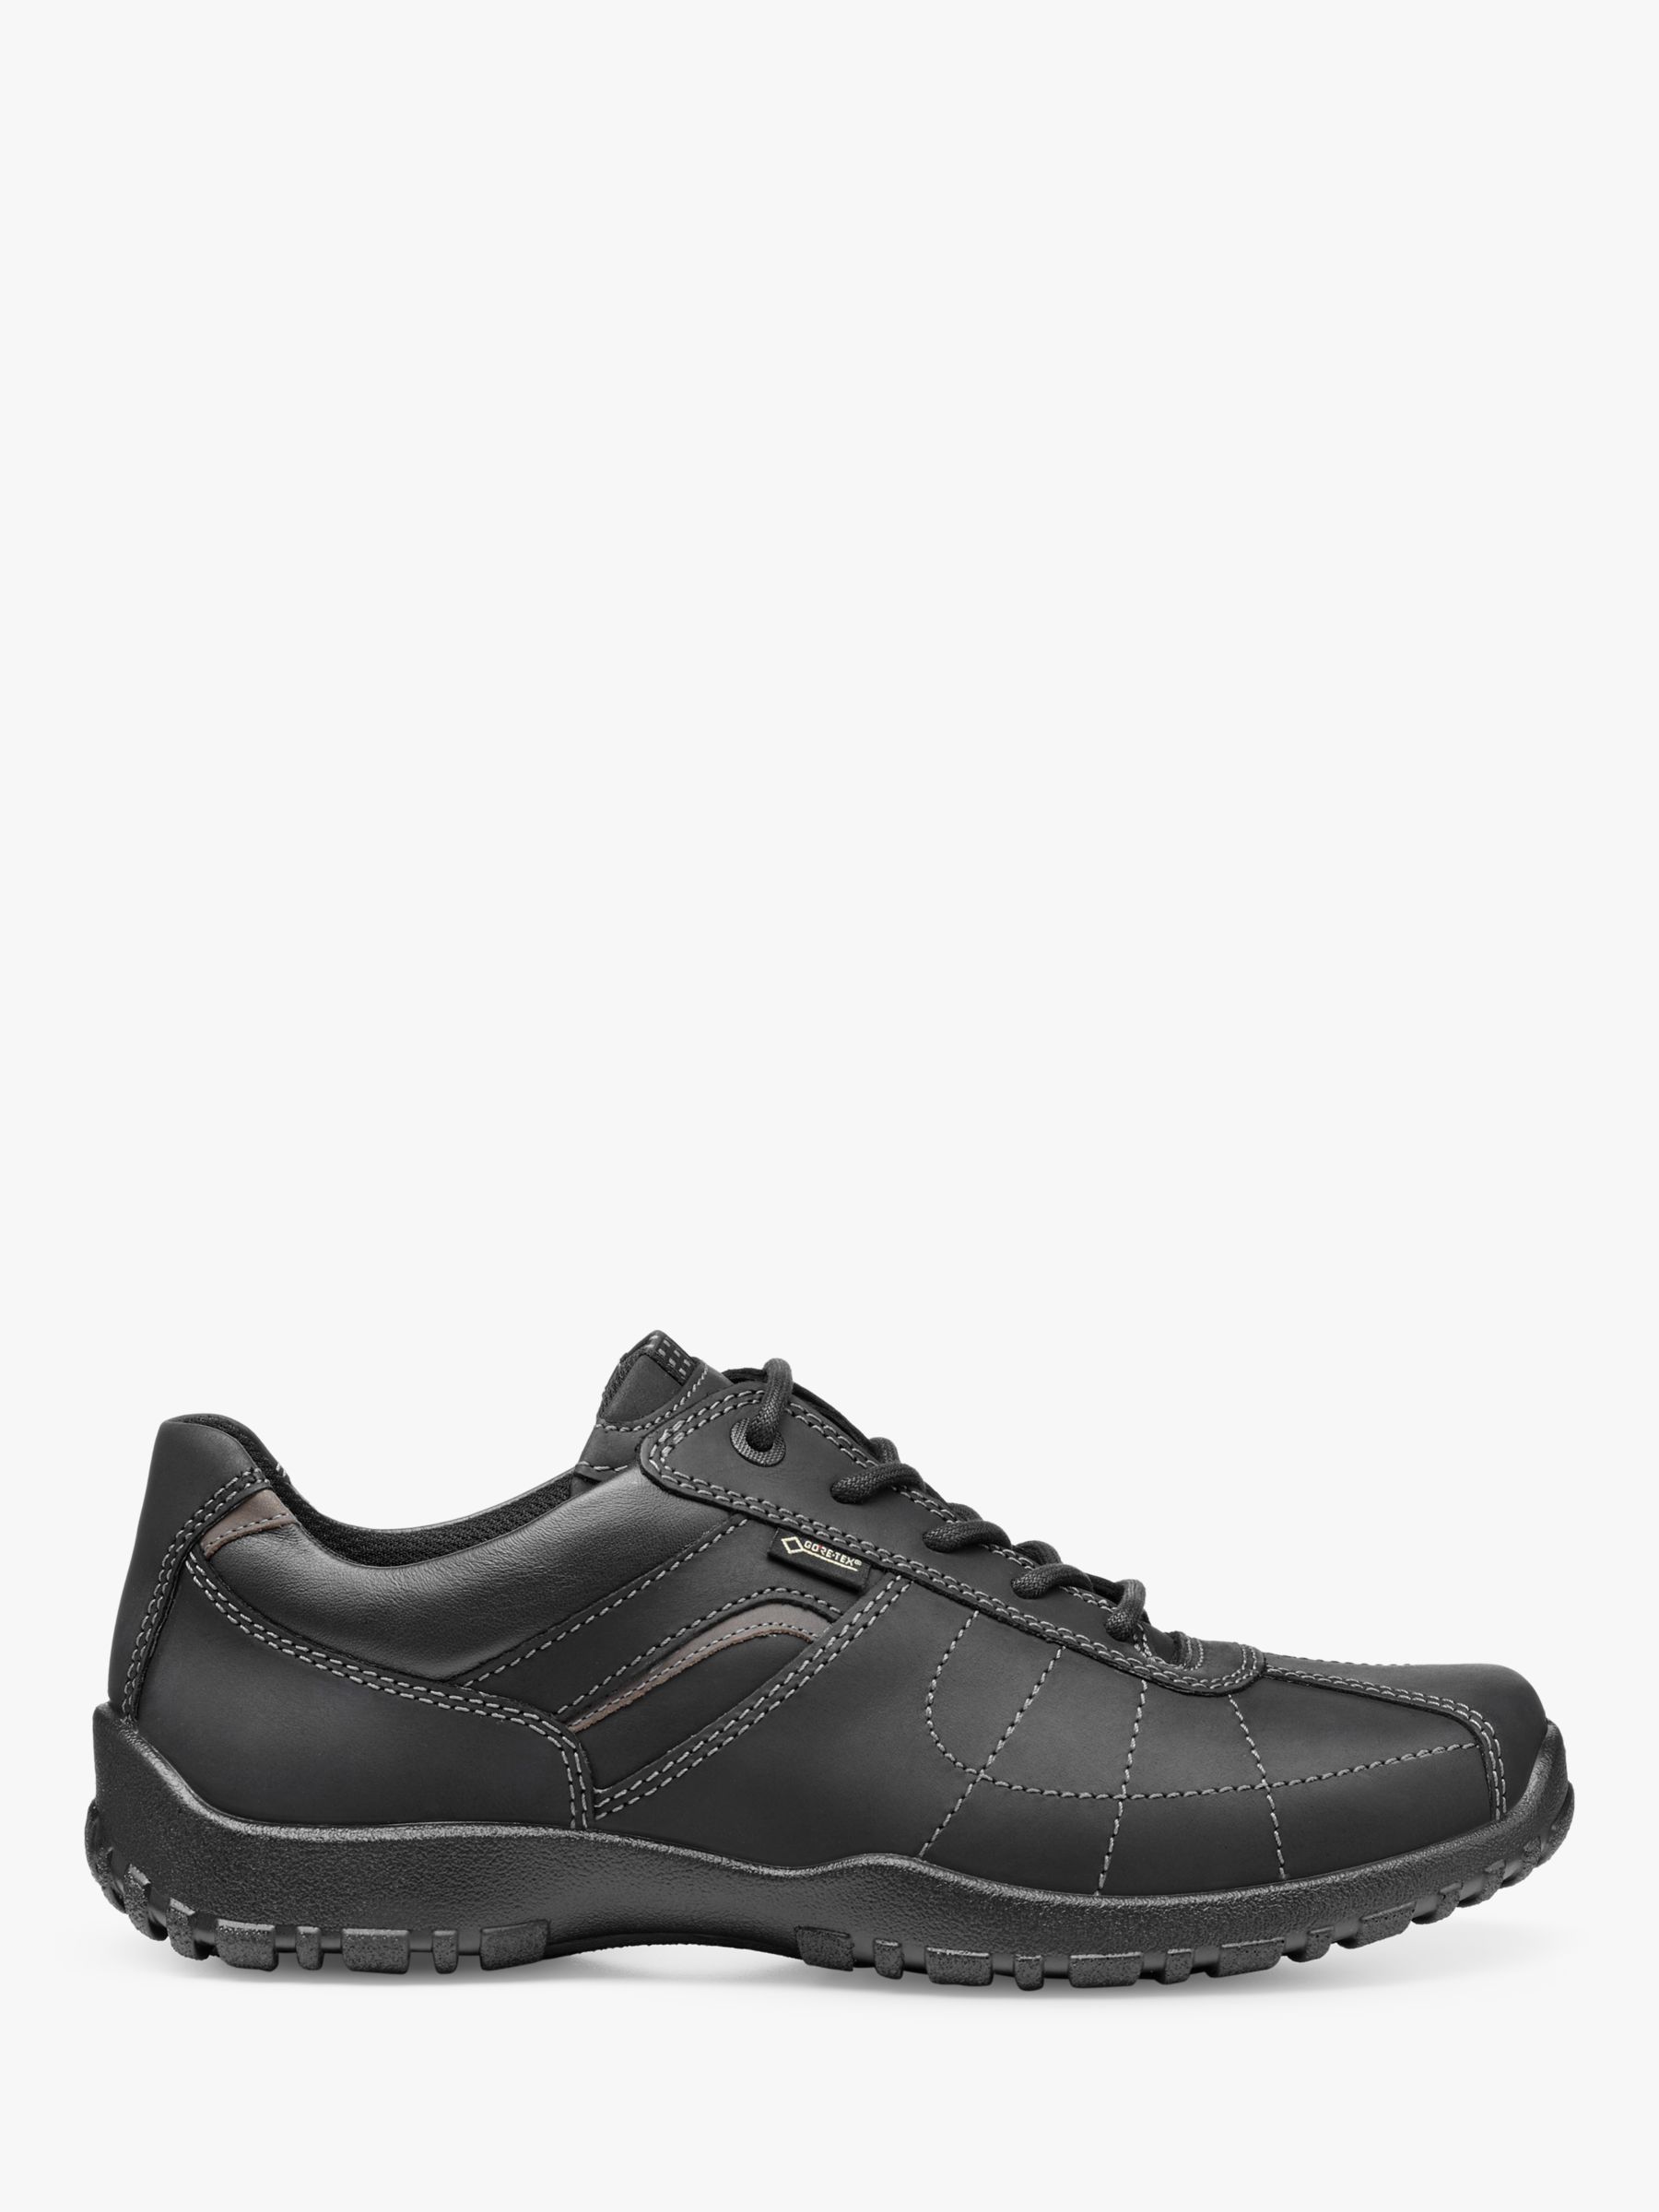 Hotter Thor II Waterproof Walking Shoes, Black, 6S